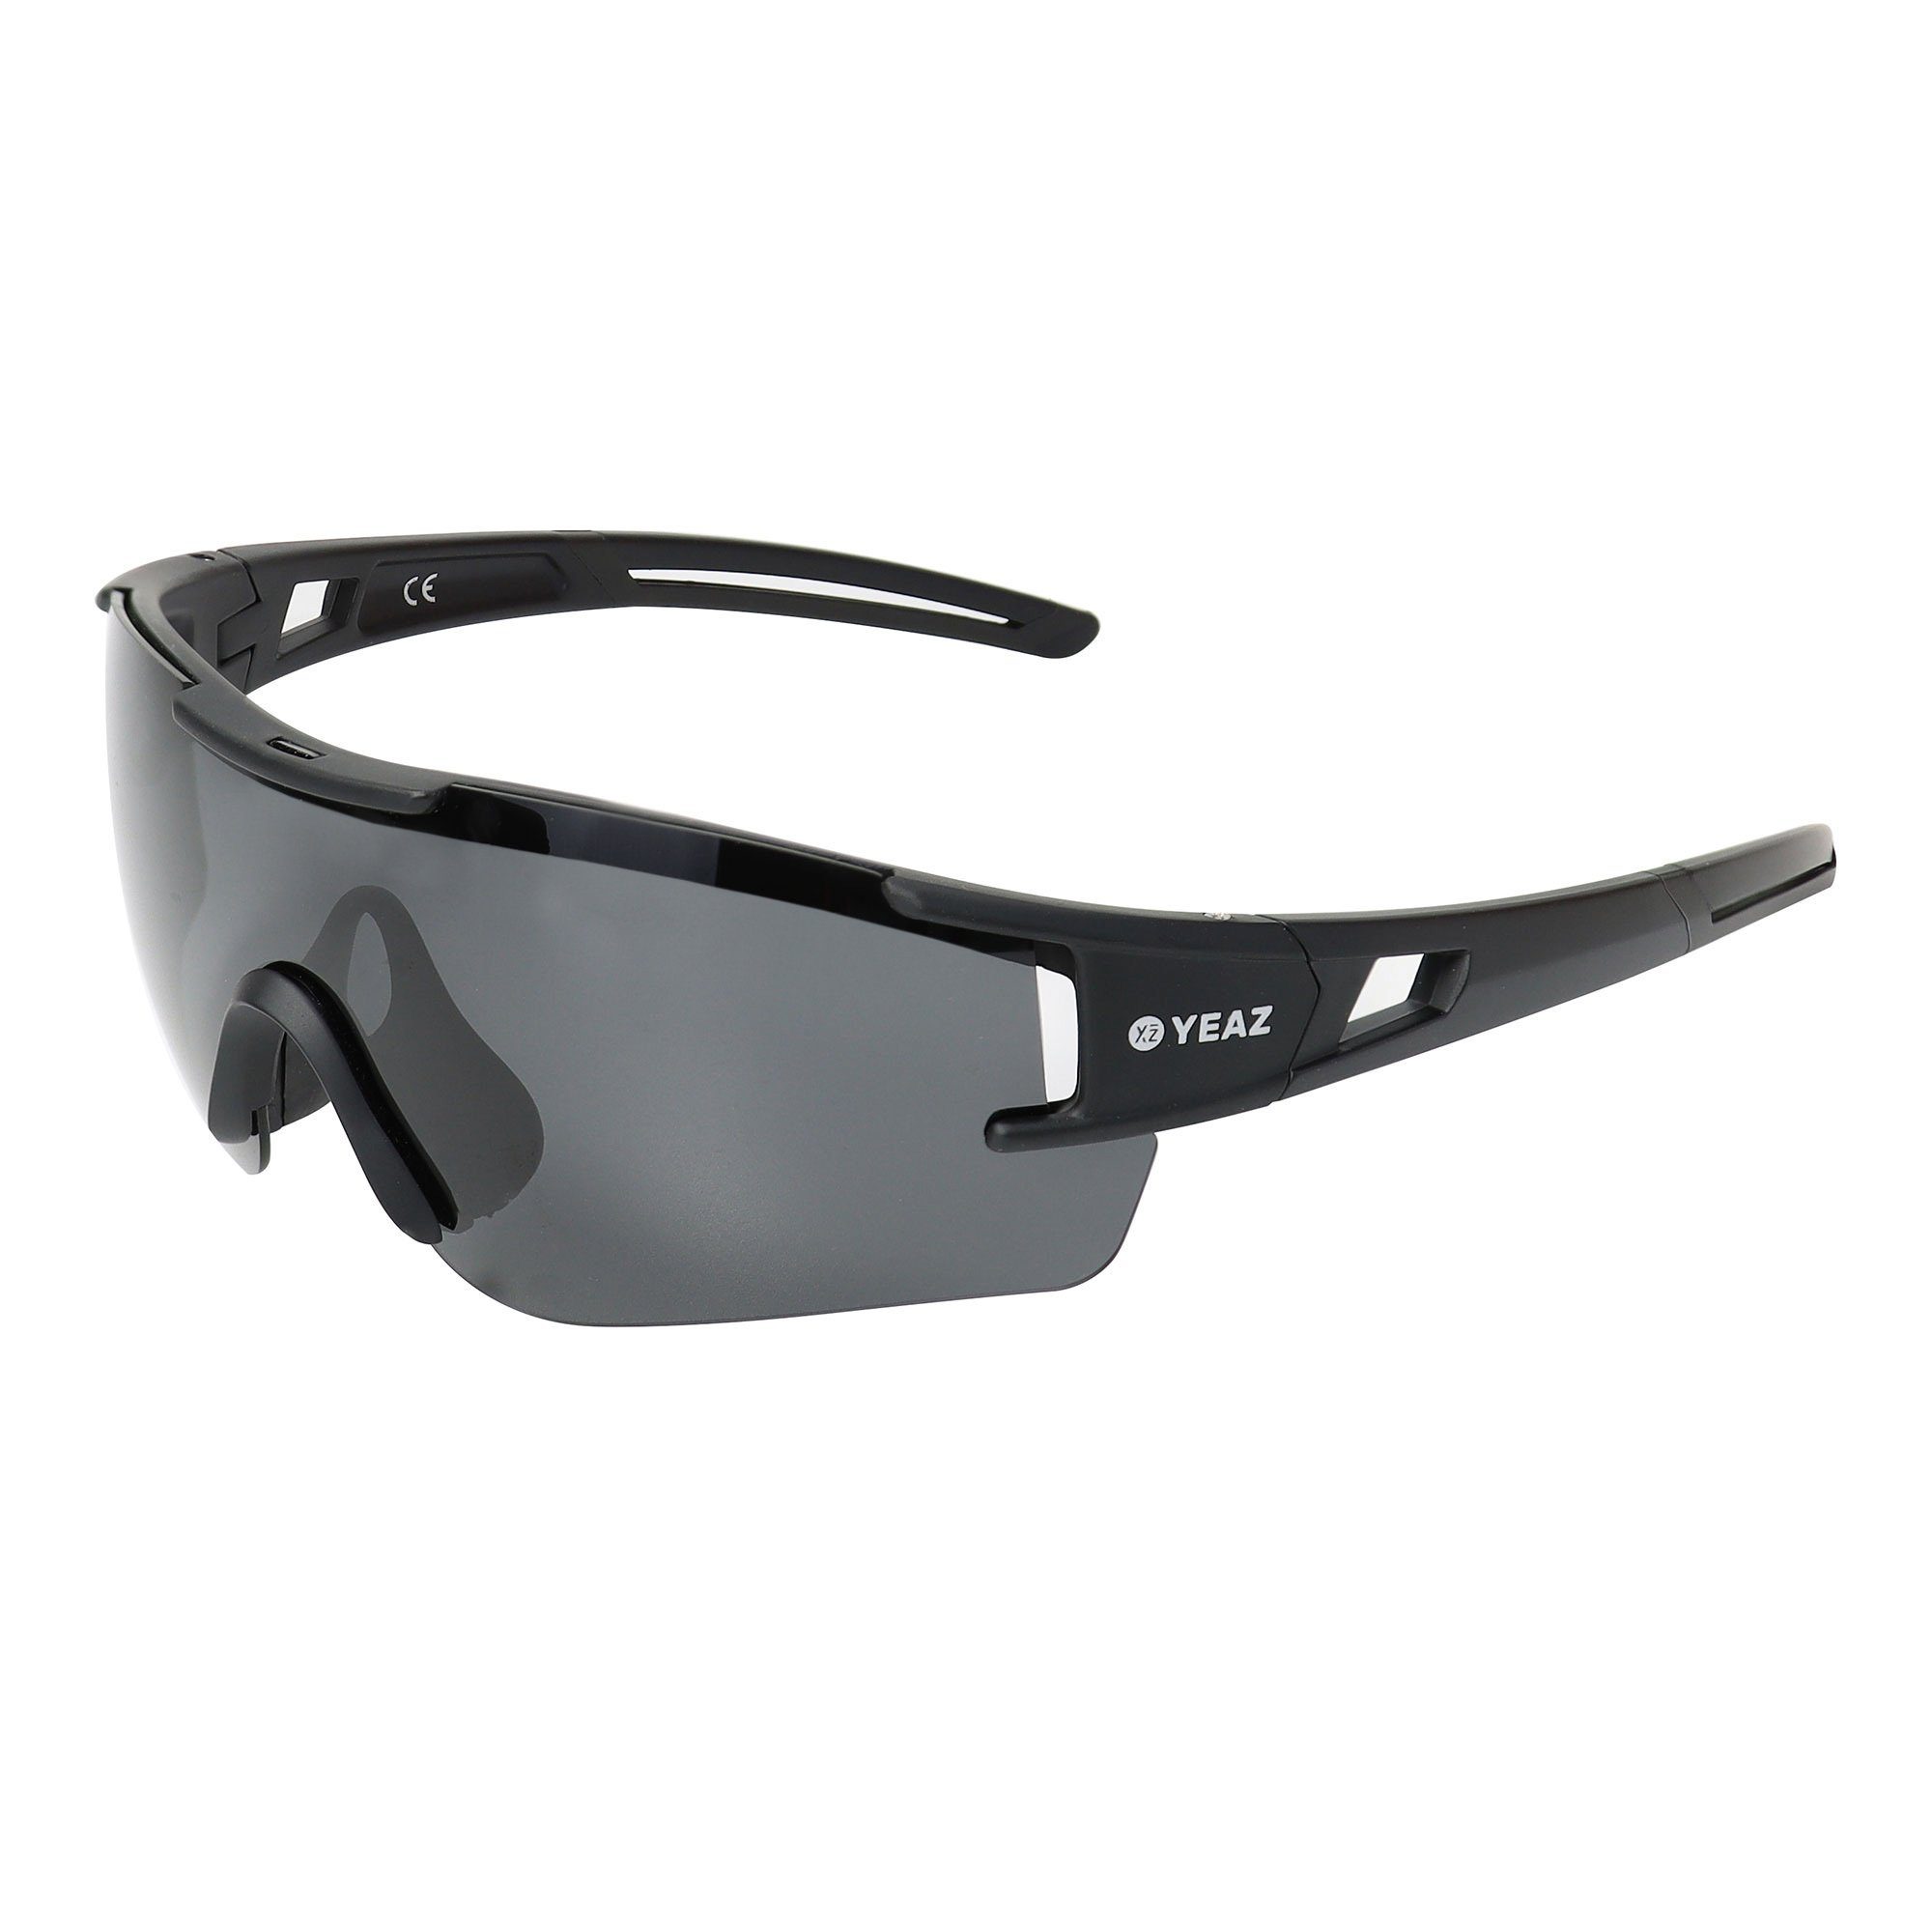 optimierter Sportbrille bei YEAZ Sicht sport-sonnenbrille black/grey, Guter Schutz SUNBLOW